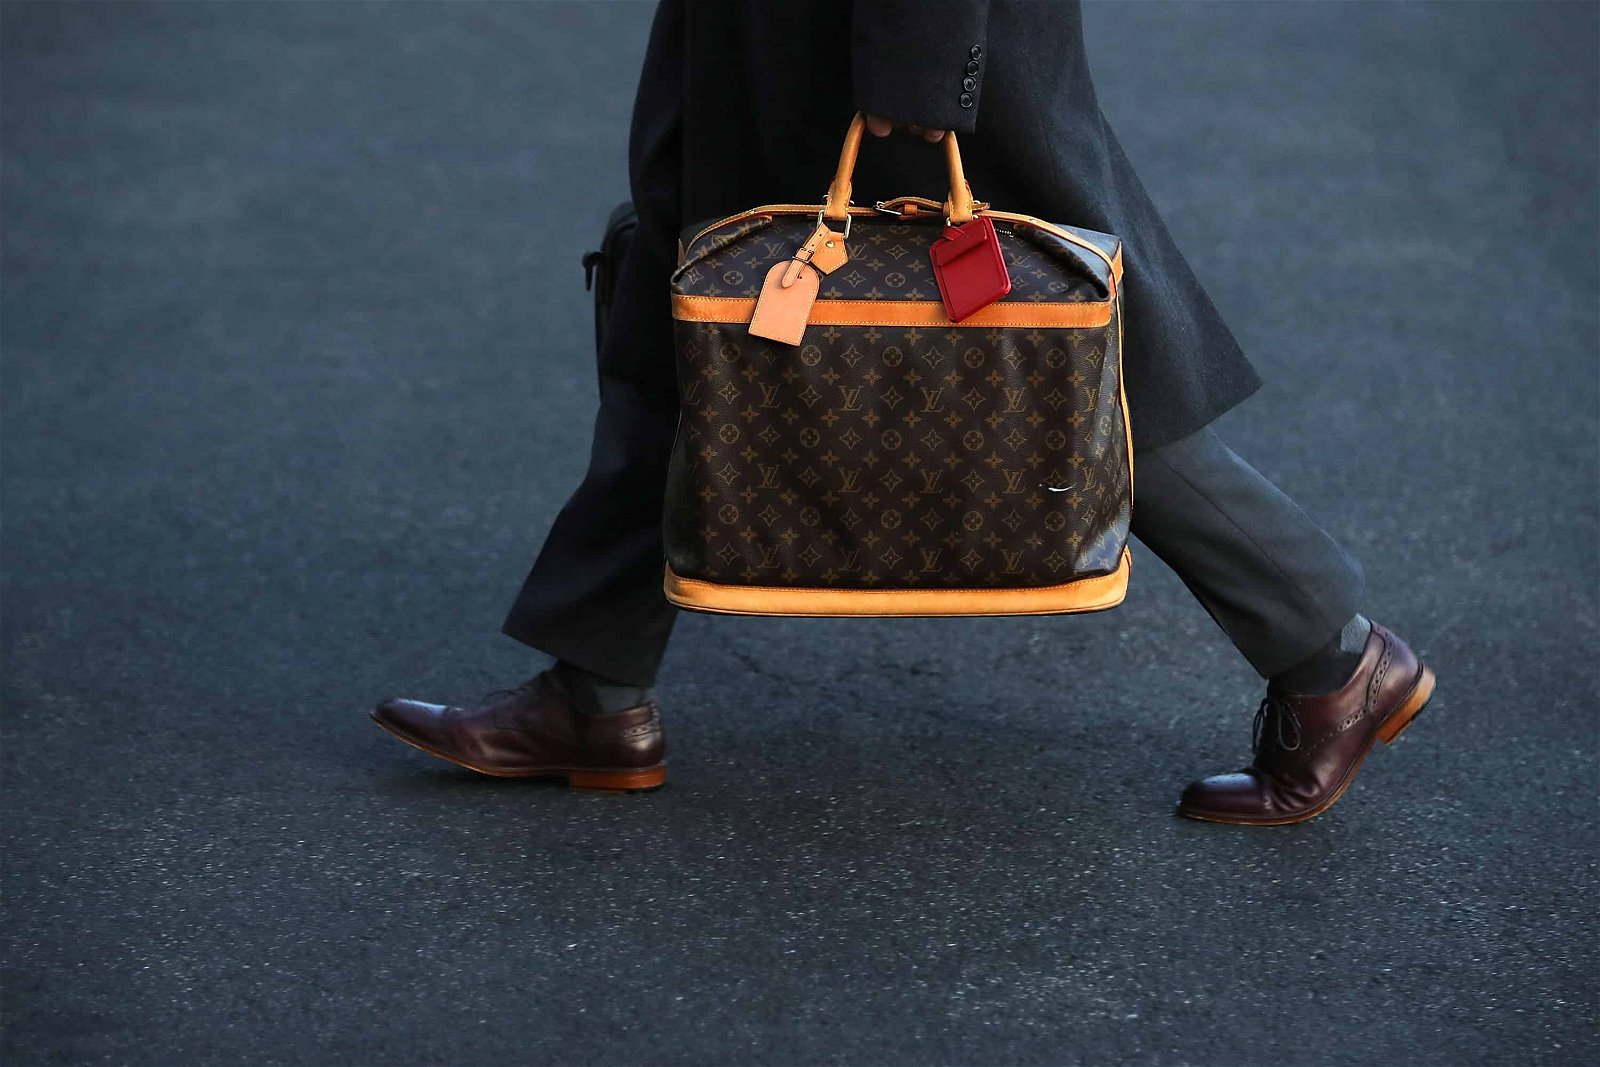 Een persoon loopt met een tas van Louis Vuitton over de straat.